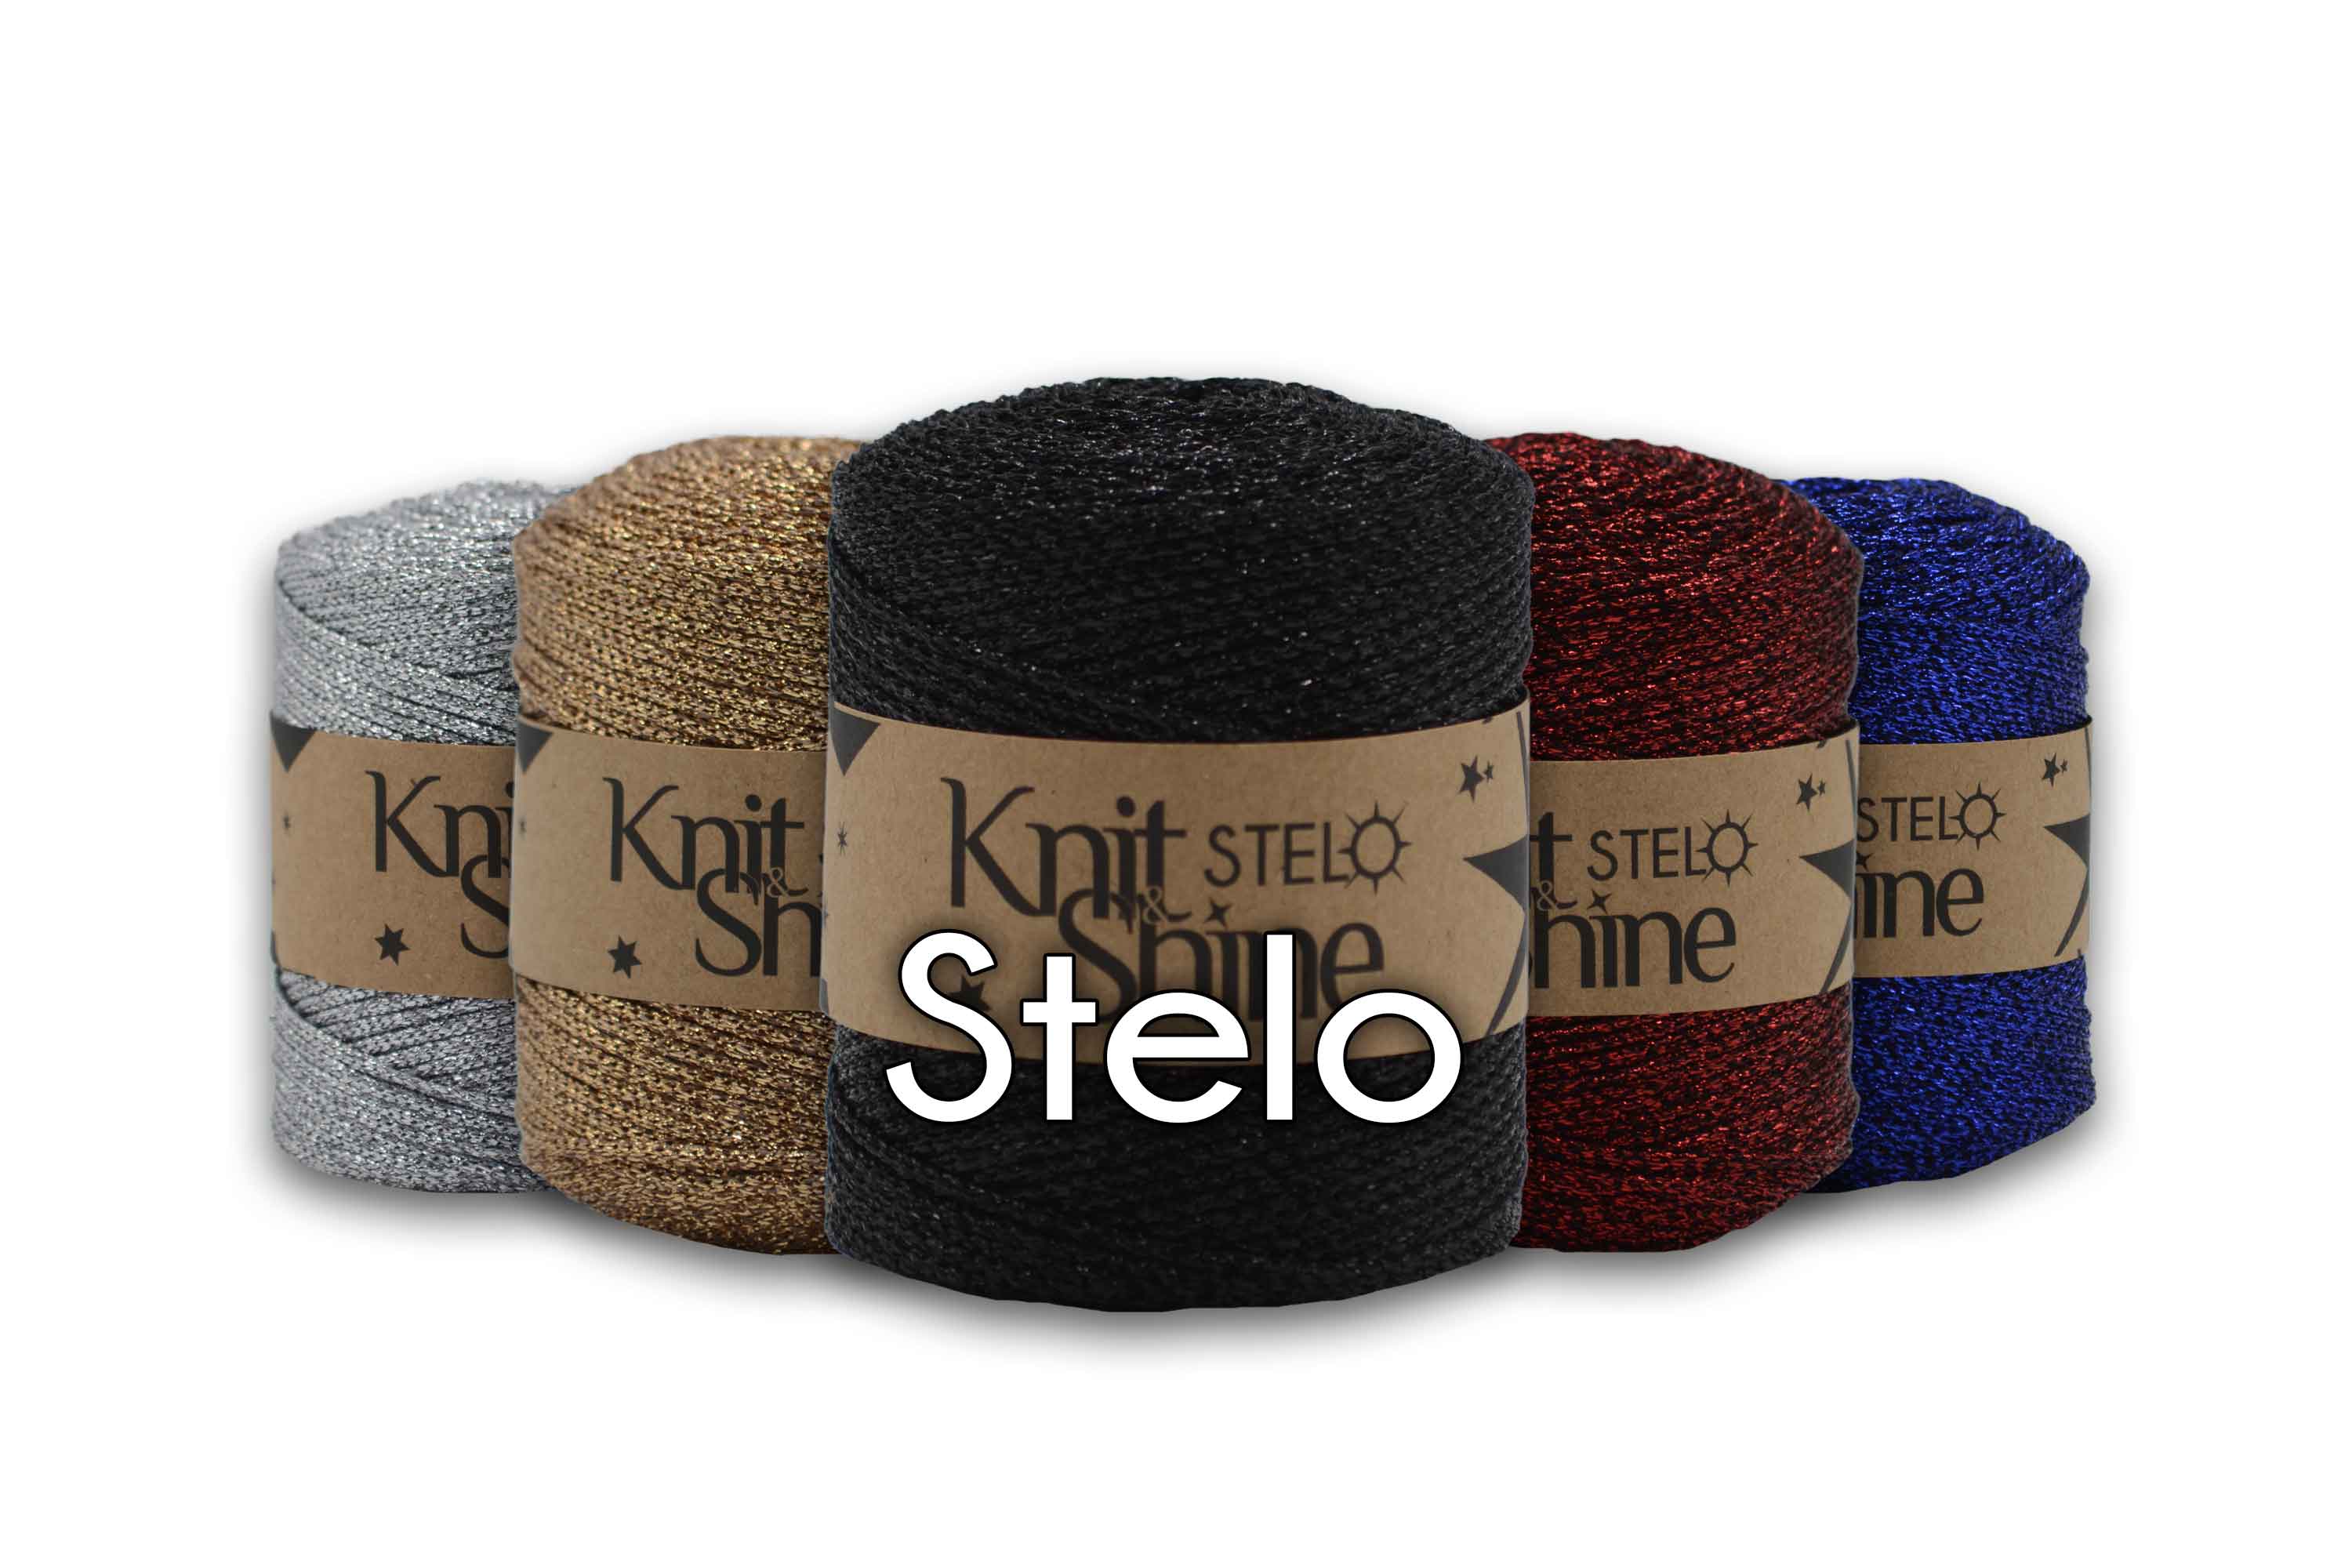 metallic yarns knit and shine knit & shine shiny metal yarns stelo yarns bugeto yarn